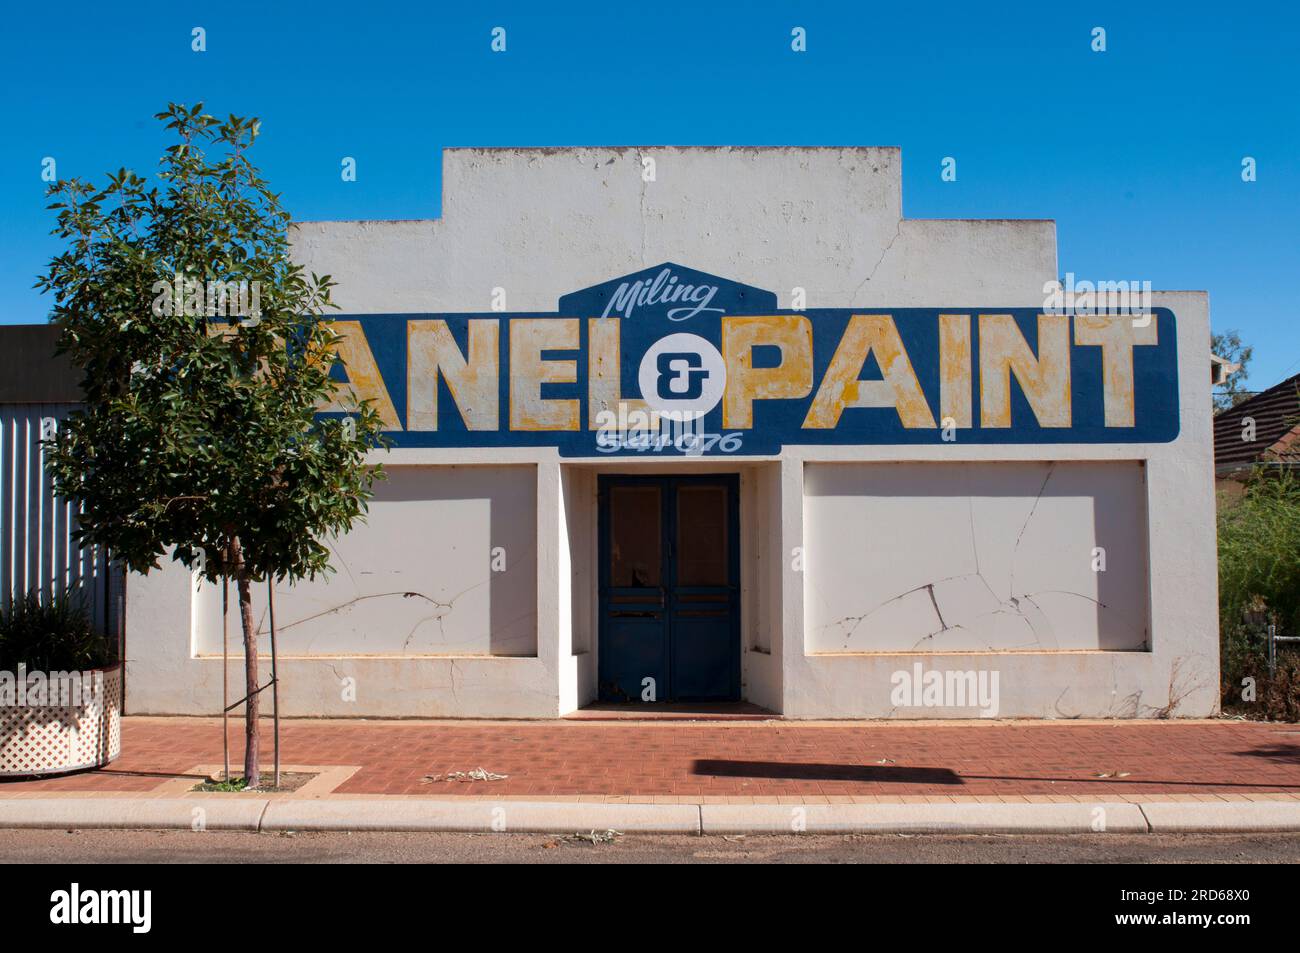 Piccola impresa, produzione di pannelli per autoveicoli e verniciatura nella città di Milang, nell'Australia Occidentale. Foto Stock